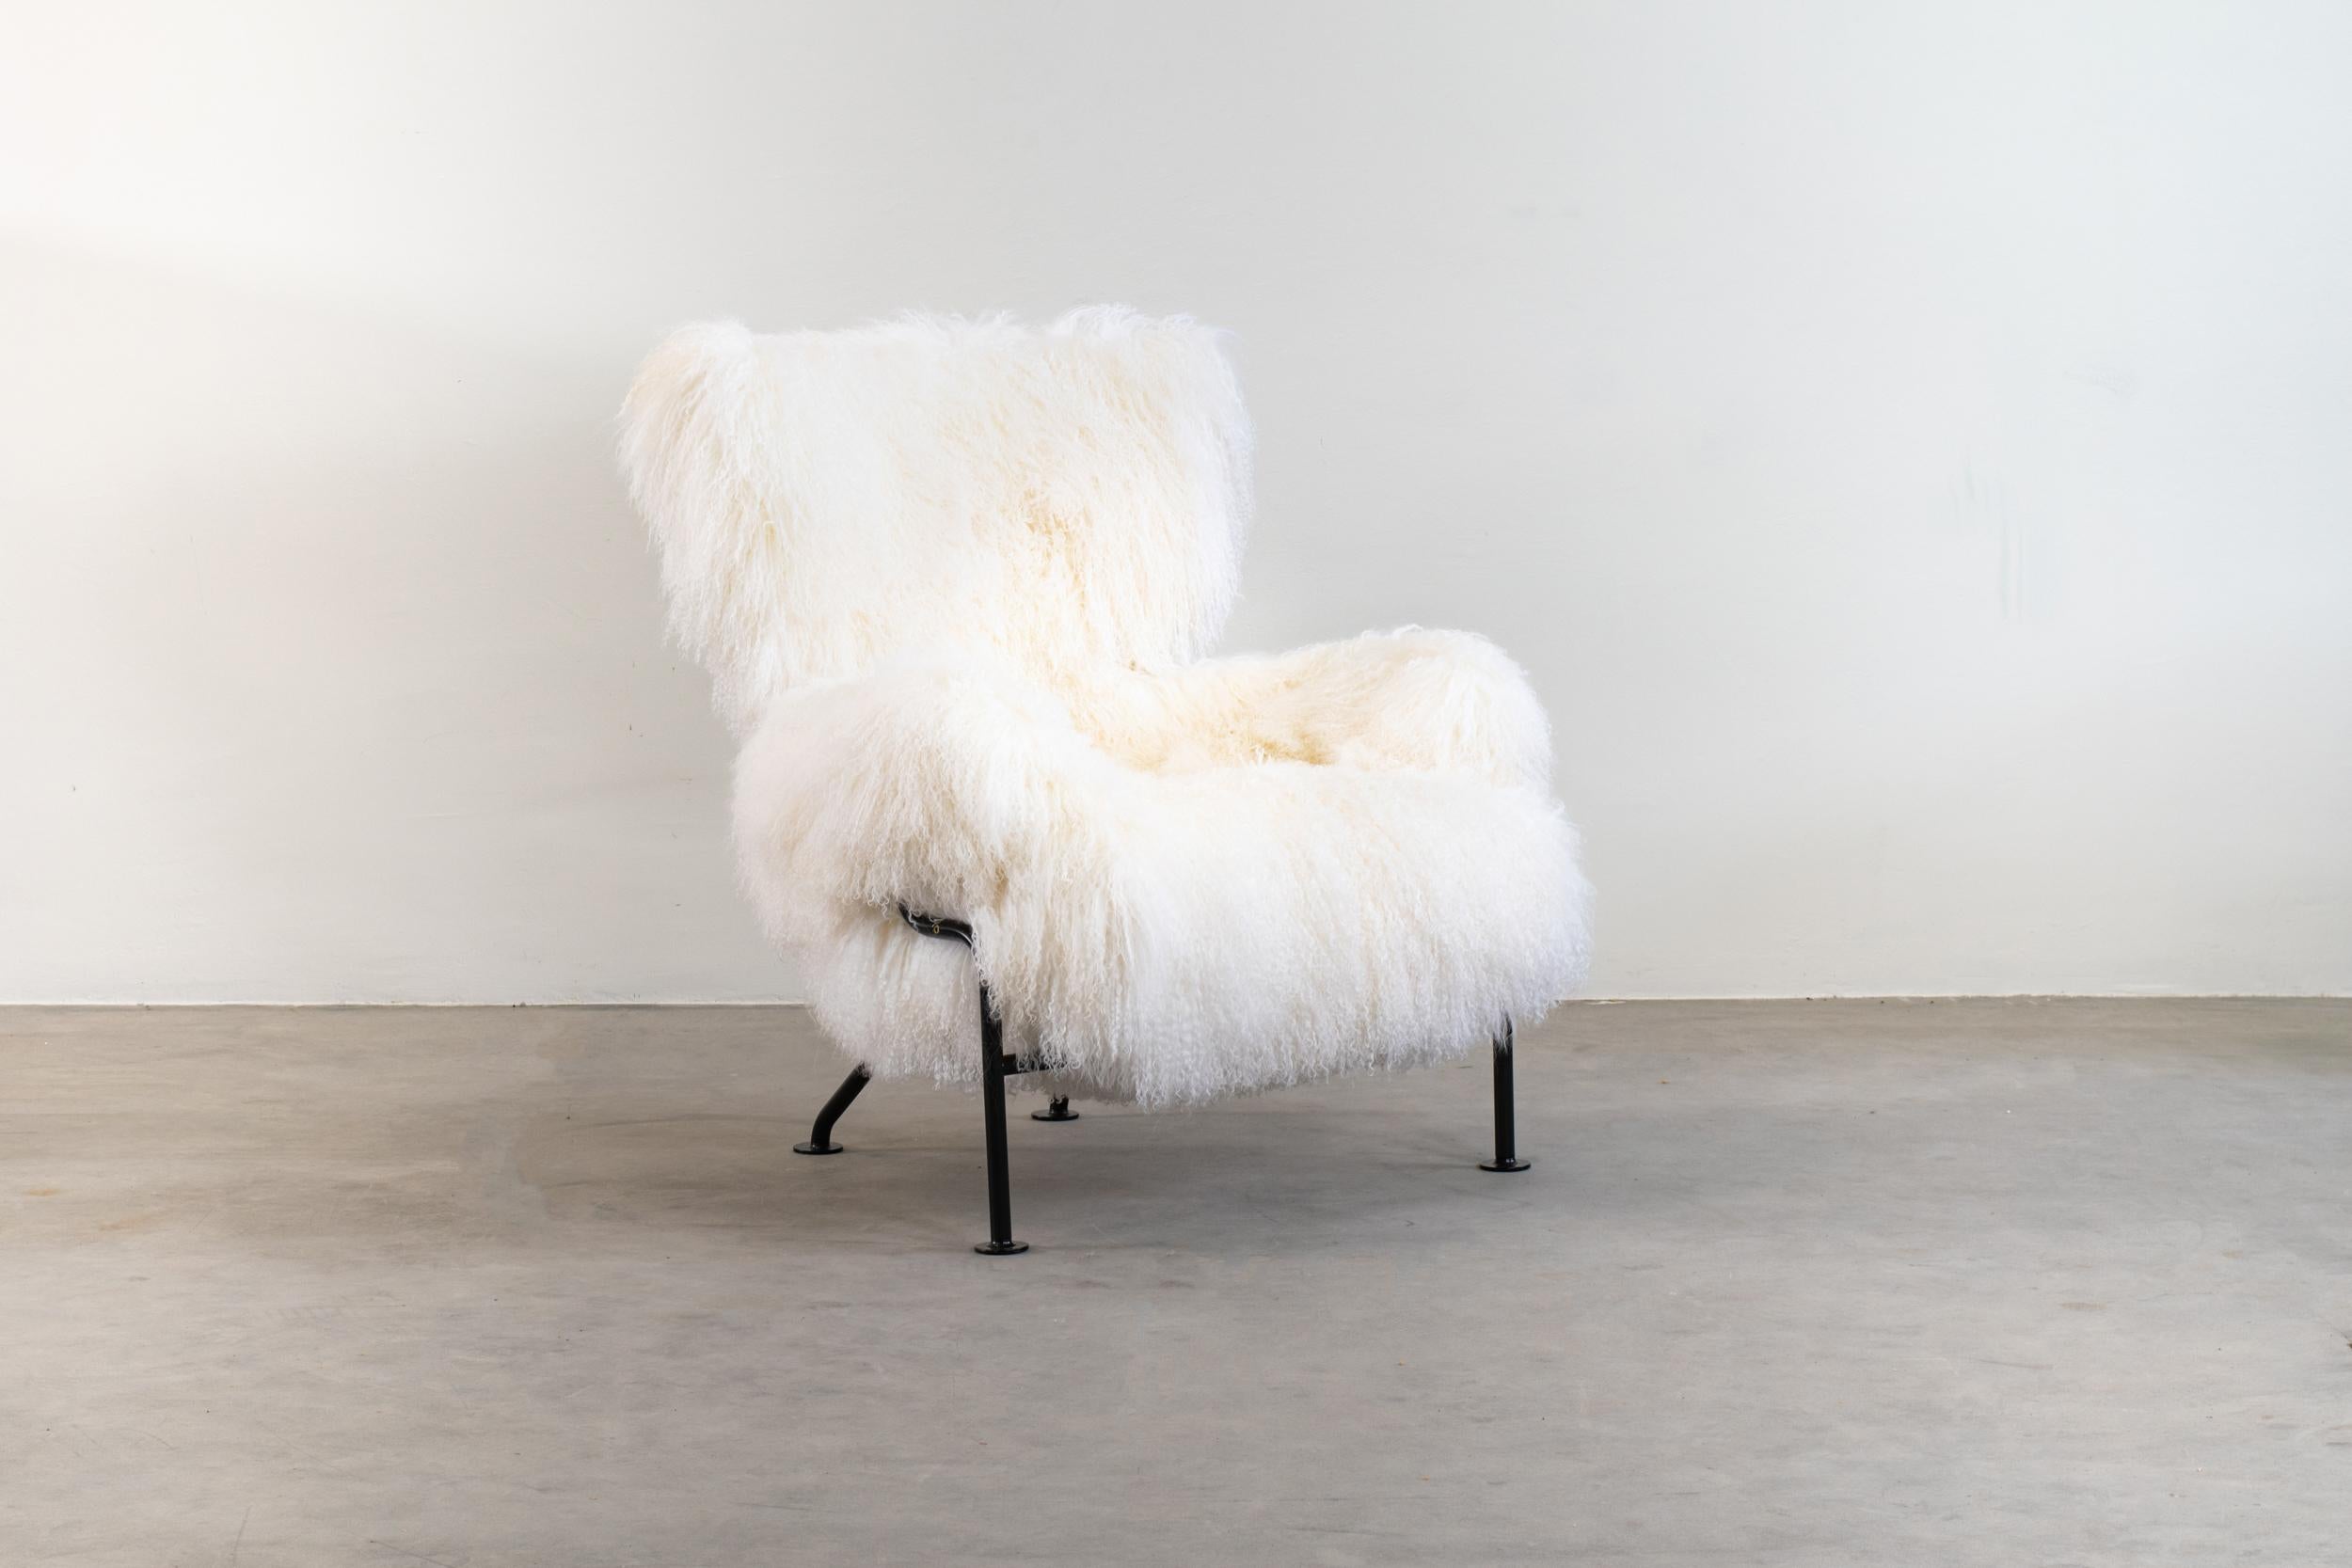 PL19 auch bekannt als Tre Pezzi Sessel mit schwarz emailliertem Stahlrohrgestell, gepolstert mit weißer mongolischer Ziegenwolle. 

Entworfen von Franco Albini & Franca Helg für Poggi, Pavia produziert seit den späten 1950er bis 1970er